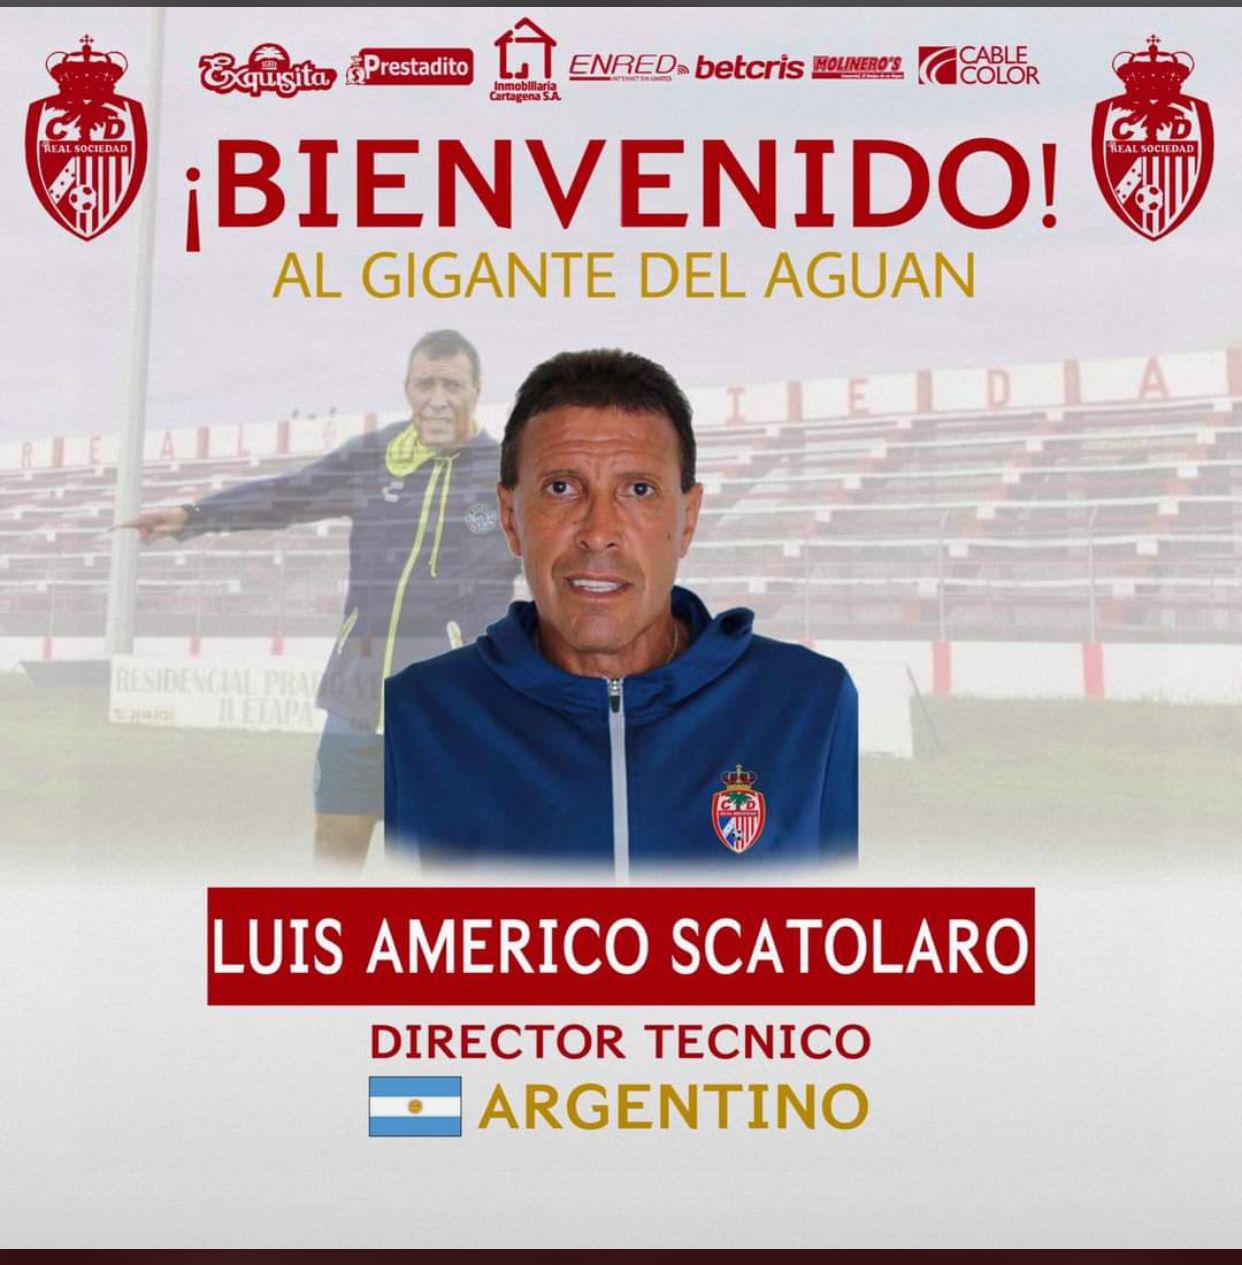 Real Sociedad anunció en sus redes sociales la llegada de Luis américo Scatolaro.